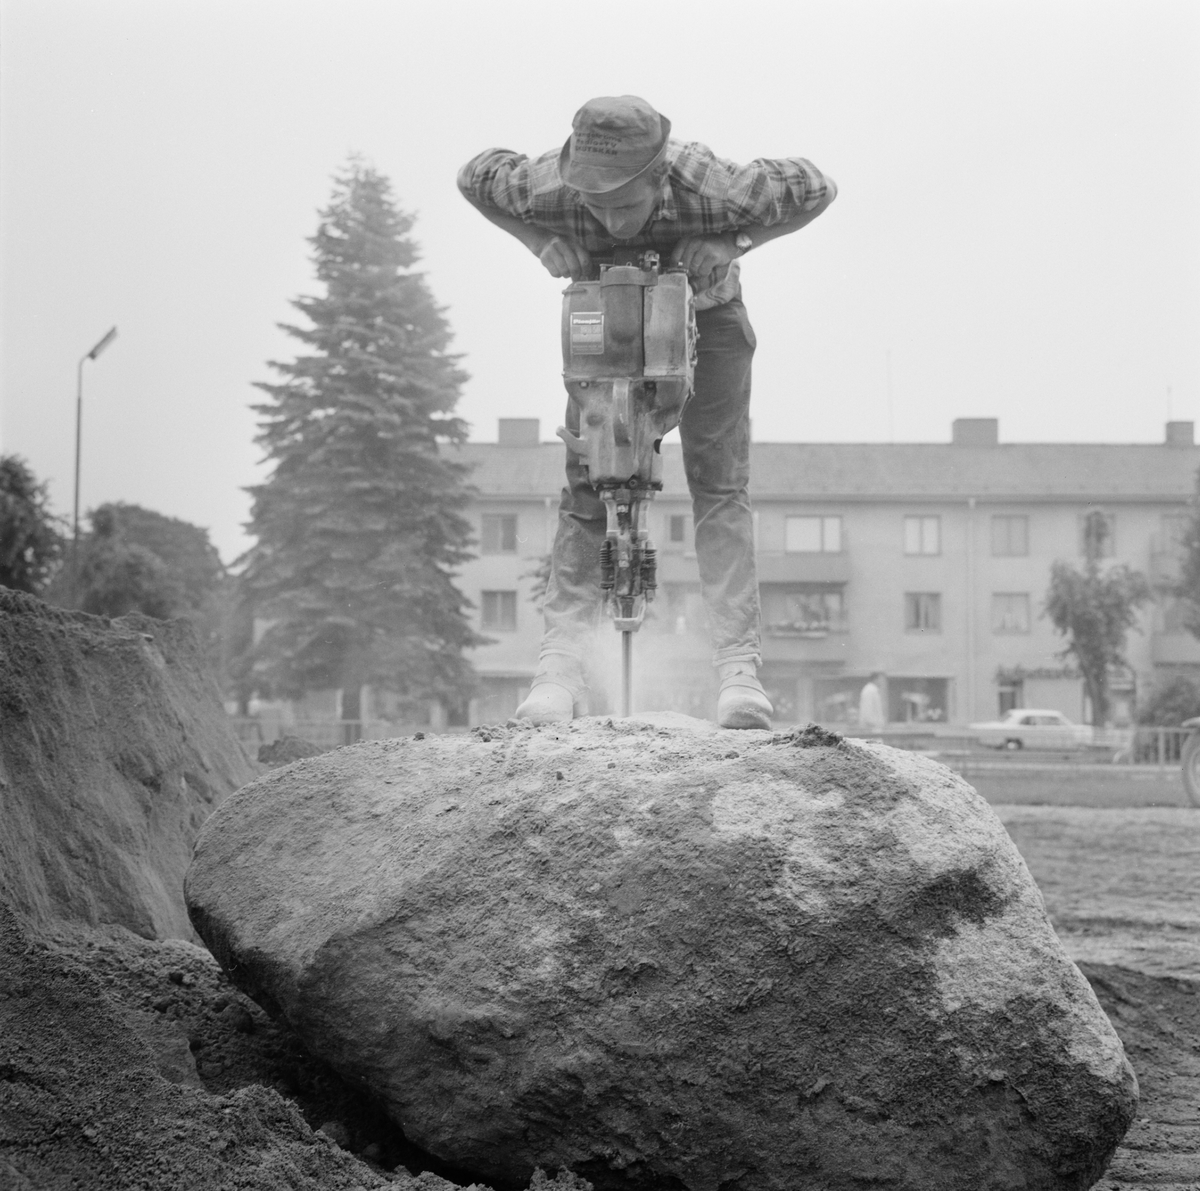 Skolpaviljong rustas under semestern, Tierp, Uppland, juli 1971